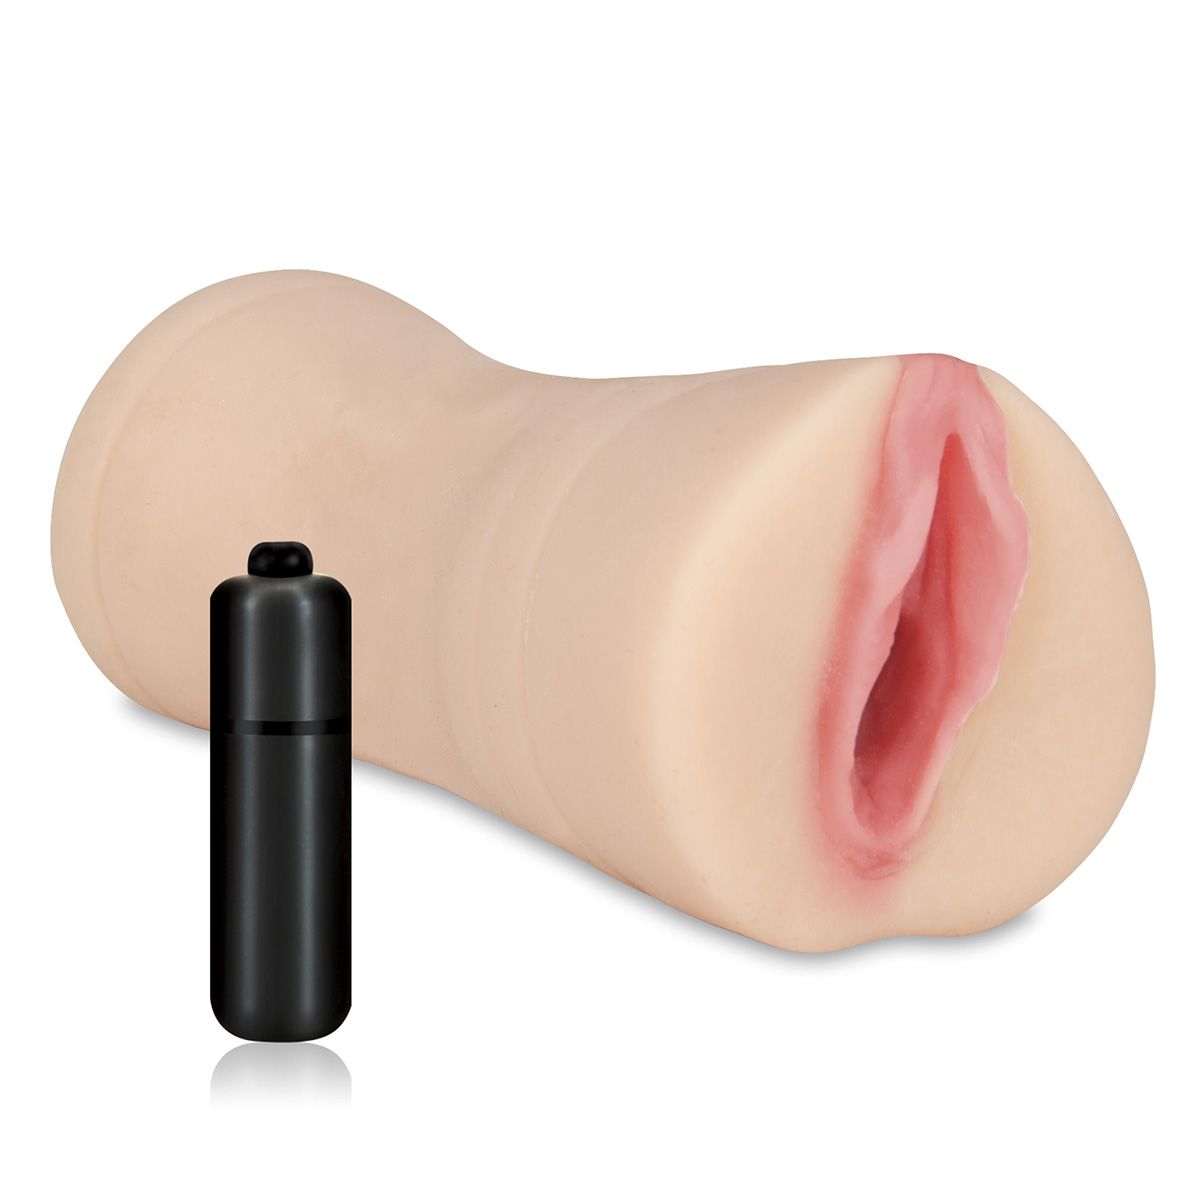 Компактный ручной мастурбатор в виде вагины, обеспечивающий повышенную чувствительность от процесса благодаря особому рельефу внутреннего канала. Эргономичная форма и внешние текстуры позволяют удобно и надежно расположить игрушку в руке. В комплекте идет компактная вибропуля, которую можно поместить в мастурбатор для дополнительной стимуляции. Вибропуля работает от 3 часовых батареек типа LR44. Мастурбатор выполнен из из мягкого и приятного на ощупь TPR. Имеет сквозное отверстие, которое упрощает процесс чистки игрушки.